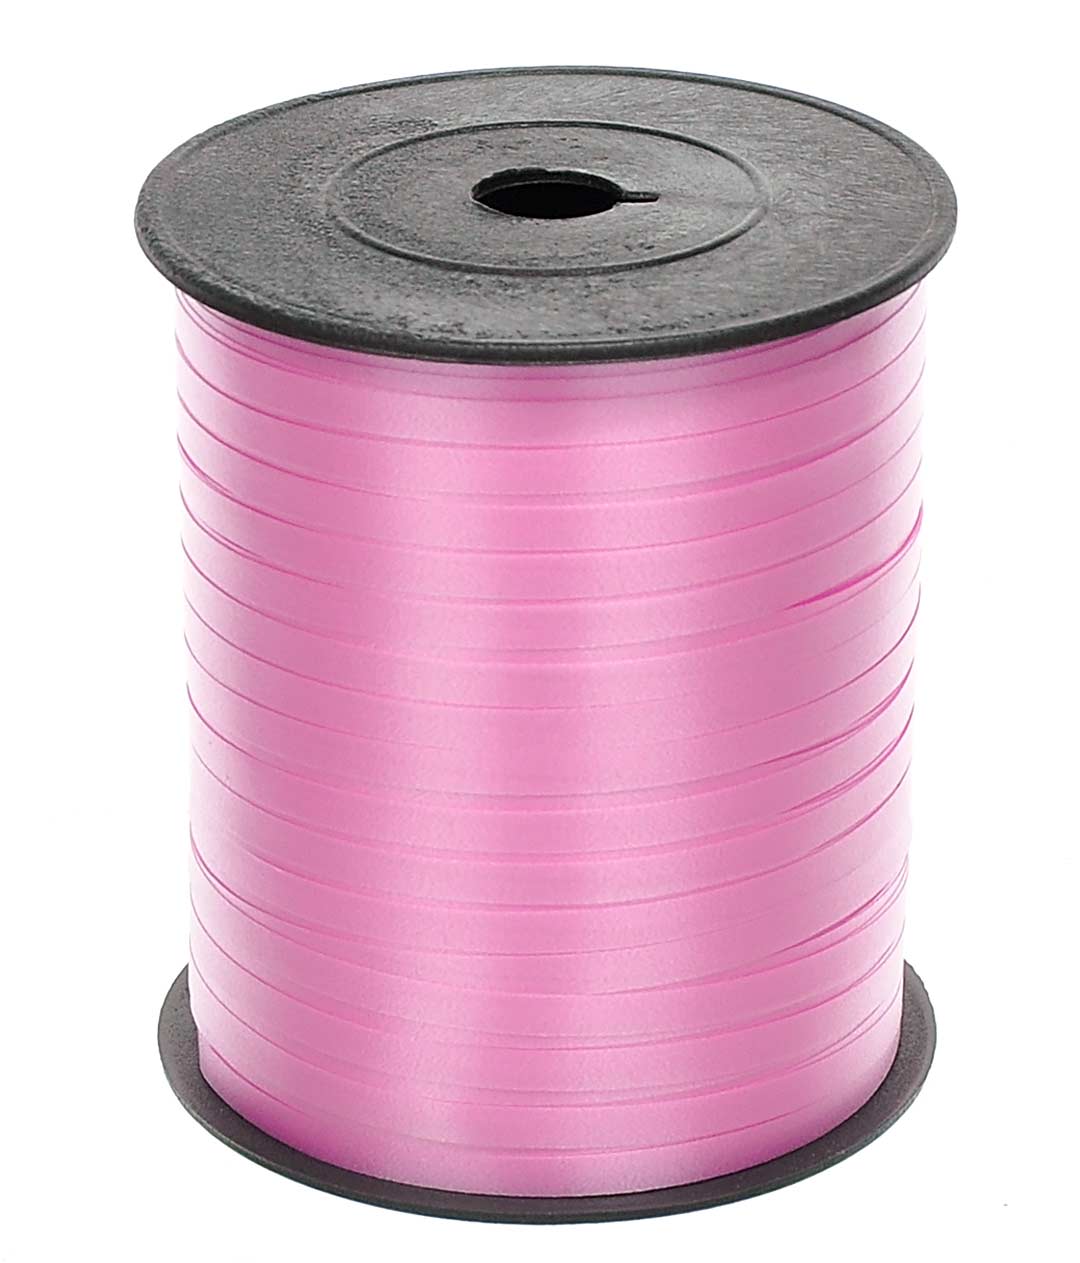 Изображение Лента полипропиленовая на бобине розовая 5мм